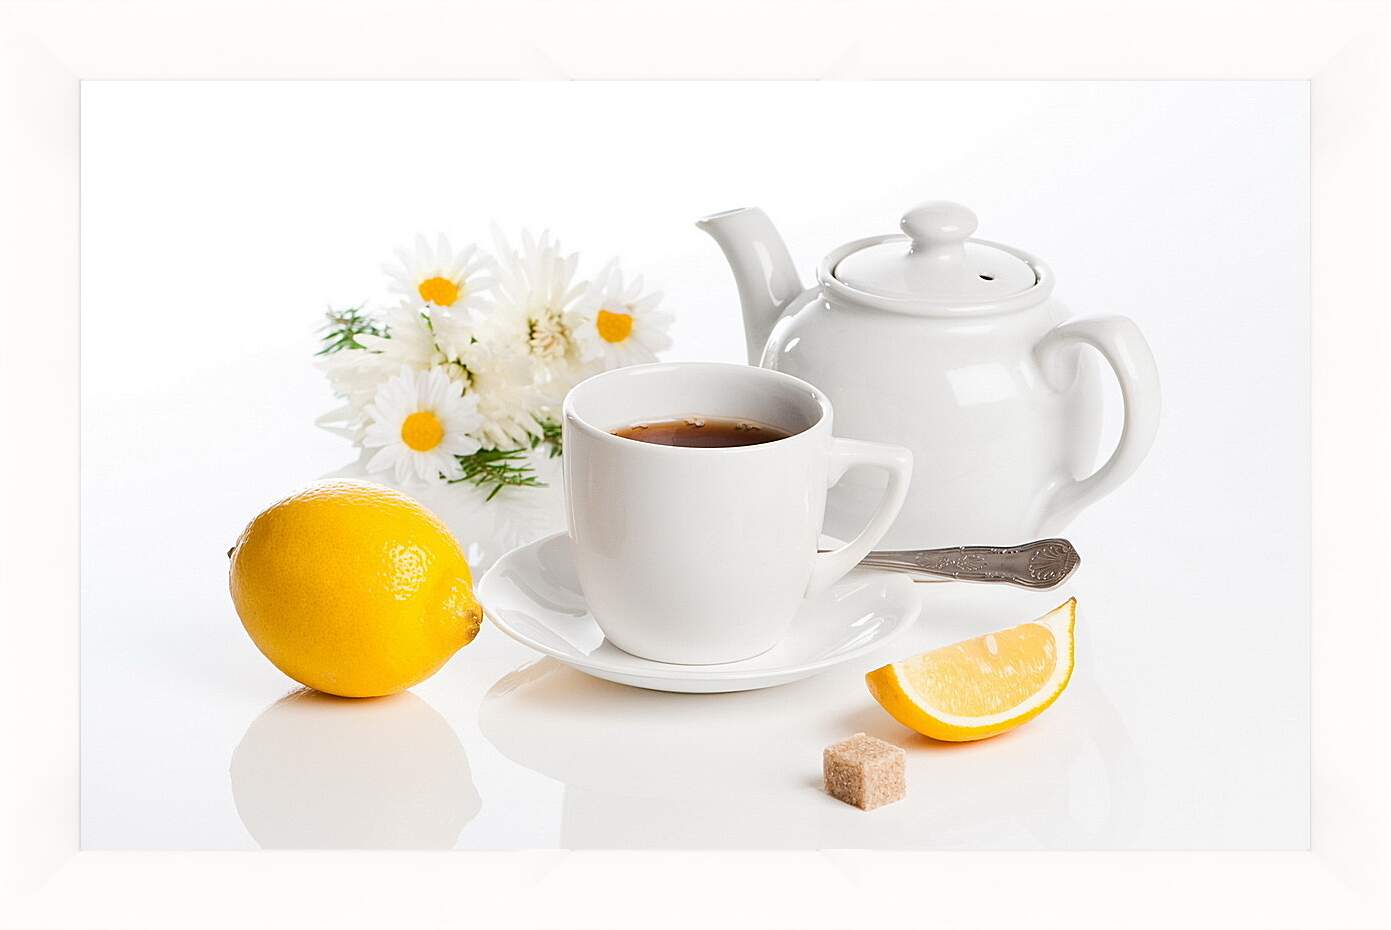 Картина в раме - Чай с лимоном и кусочек сахара